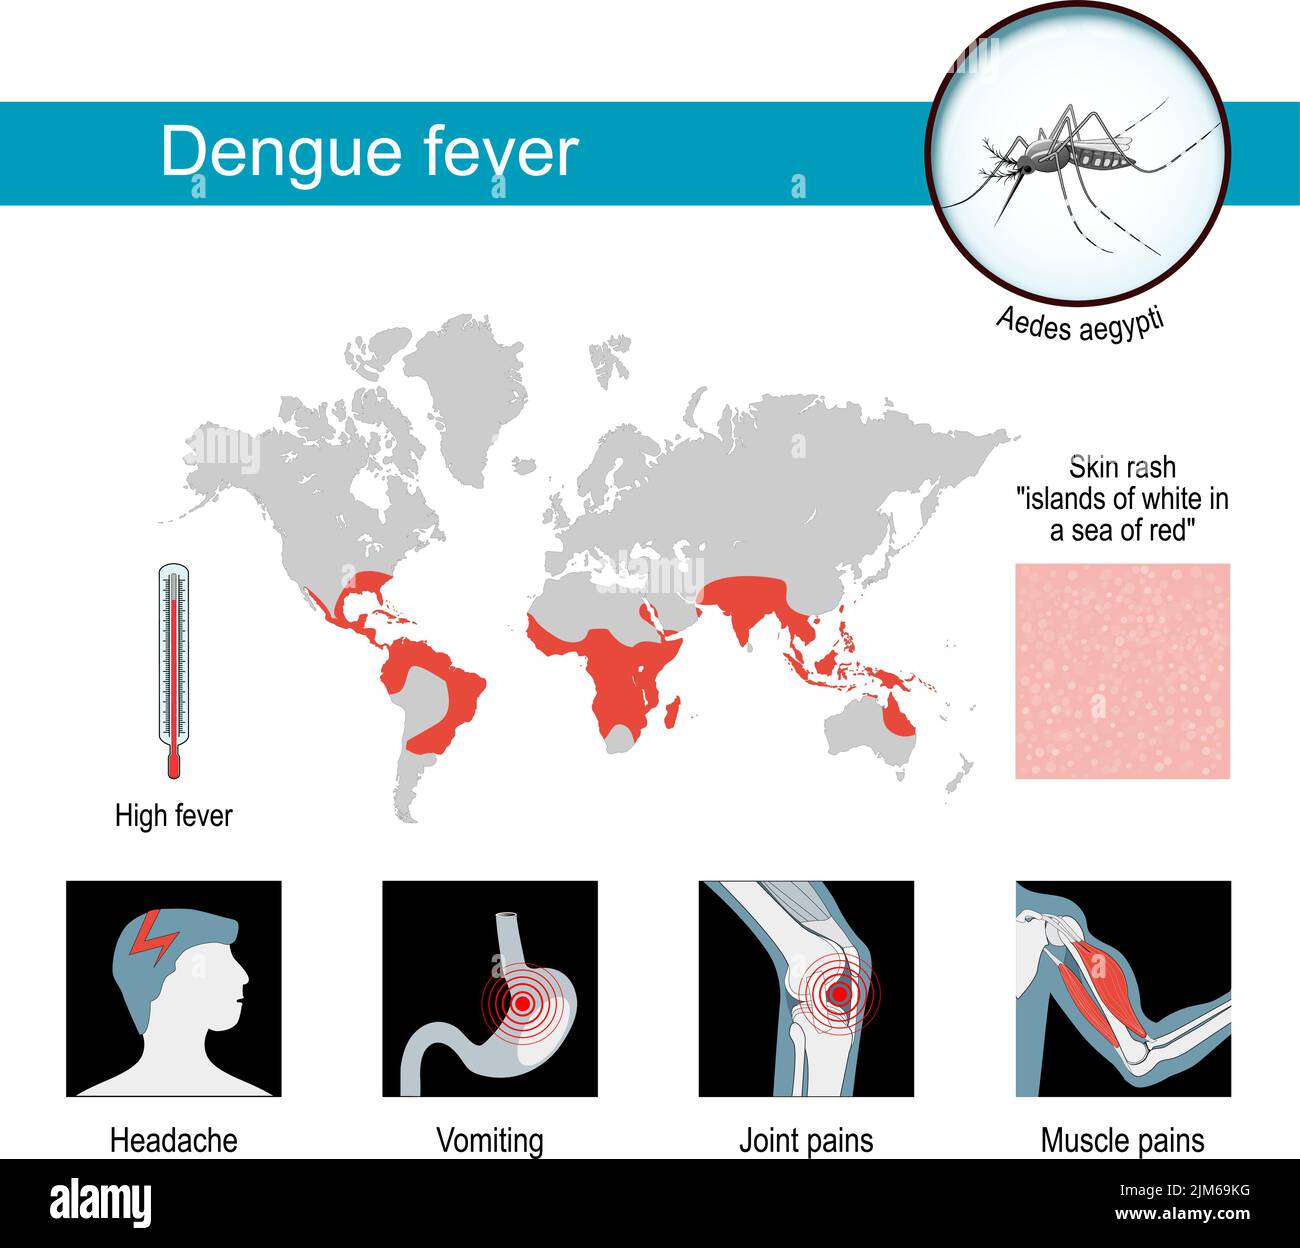 Symptômes de la dengue. Infographies et affiche de sensibilisation. Cartes de l'épidémie de dengue. Gros plan de Aedes aegypti - moustique qui propage la maladie. Vecteur Illustration de Vecteur